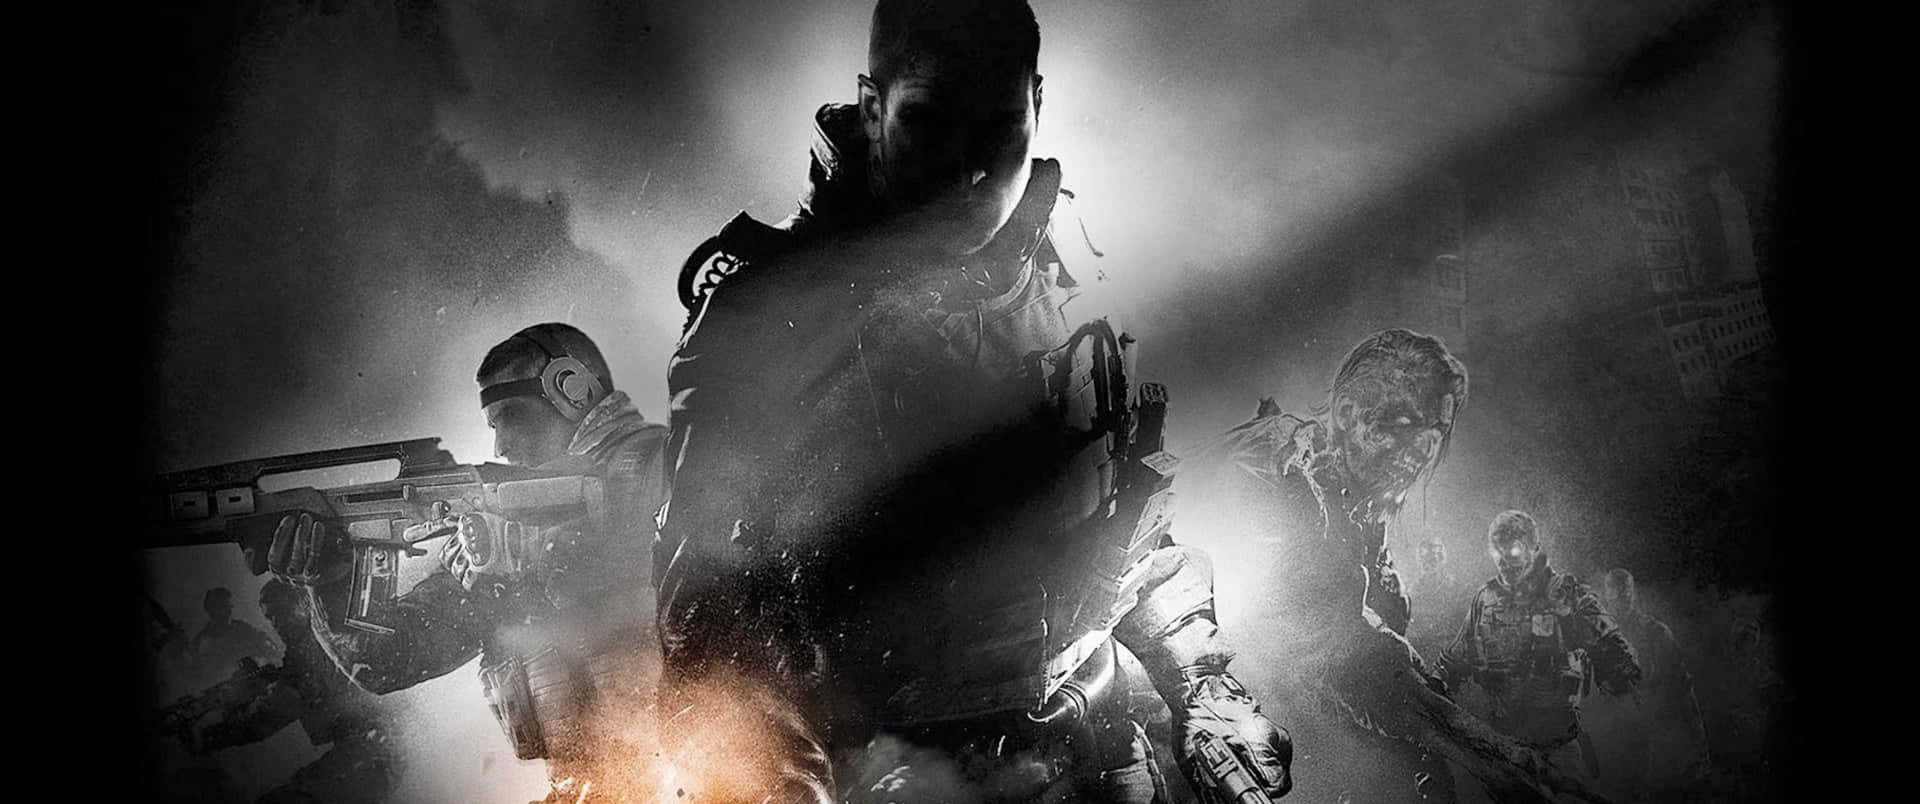 Bekämpafienden Med Avancerad Beväpning I Call Of Duty Black Ops 4.